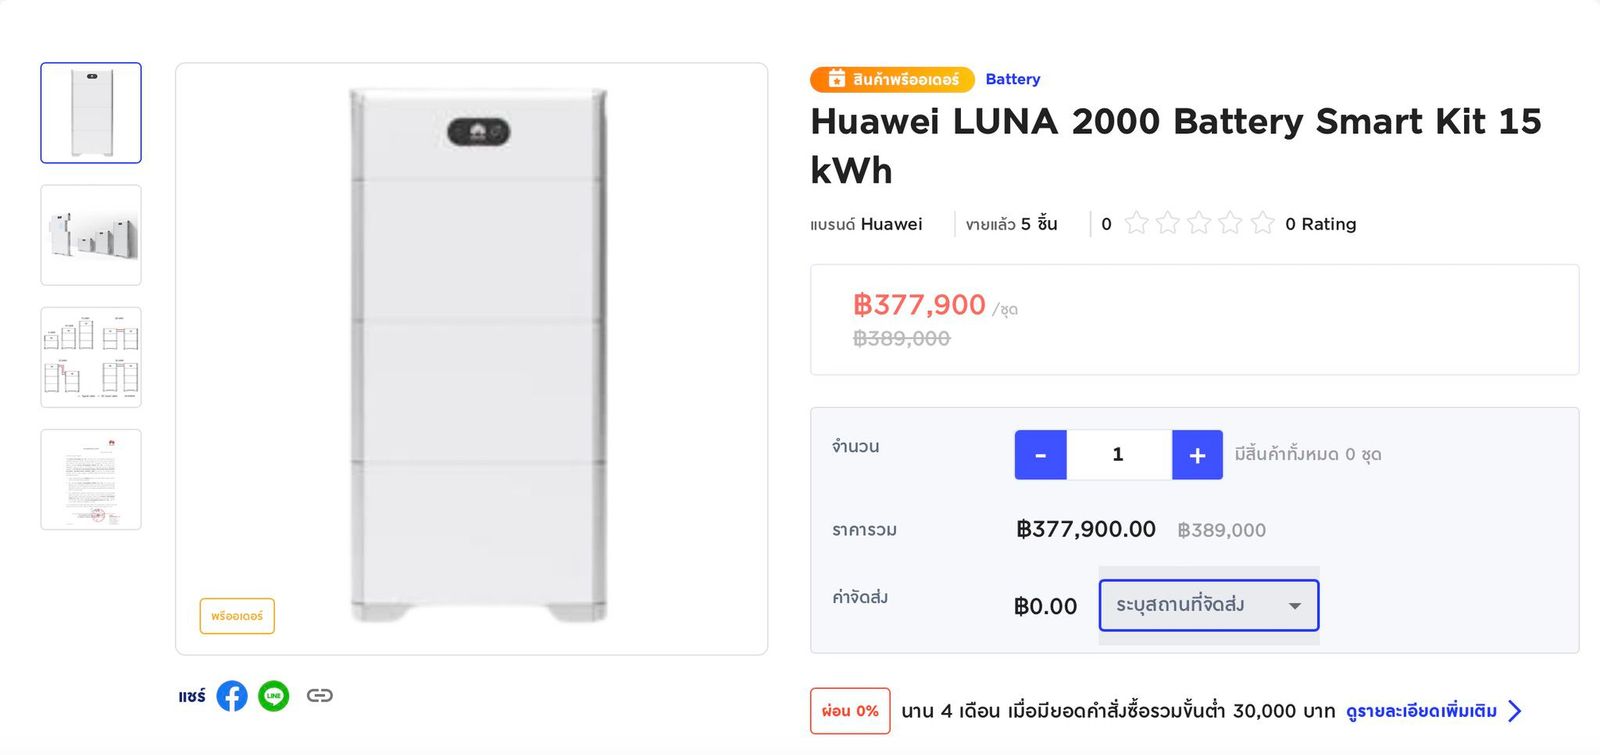 Huawei Luna 2000 Battery ESS